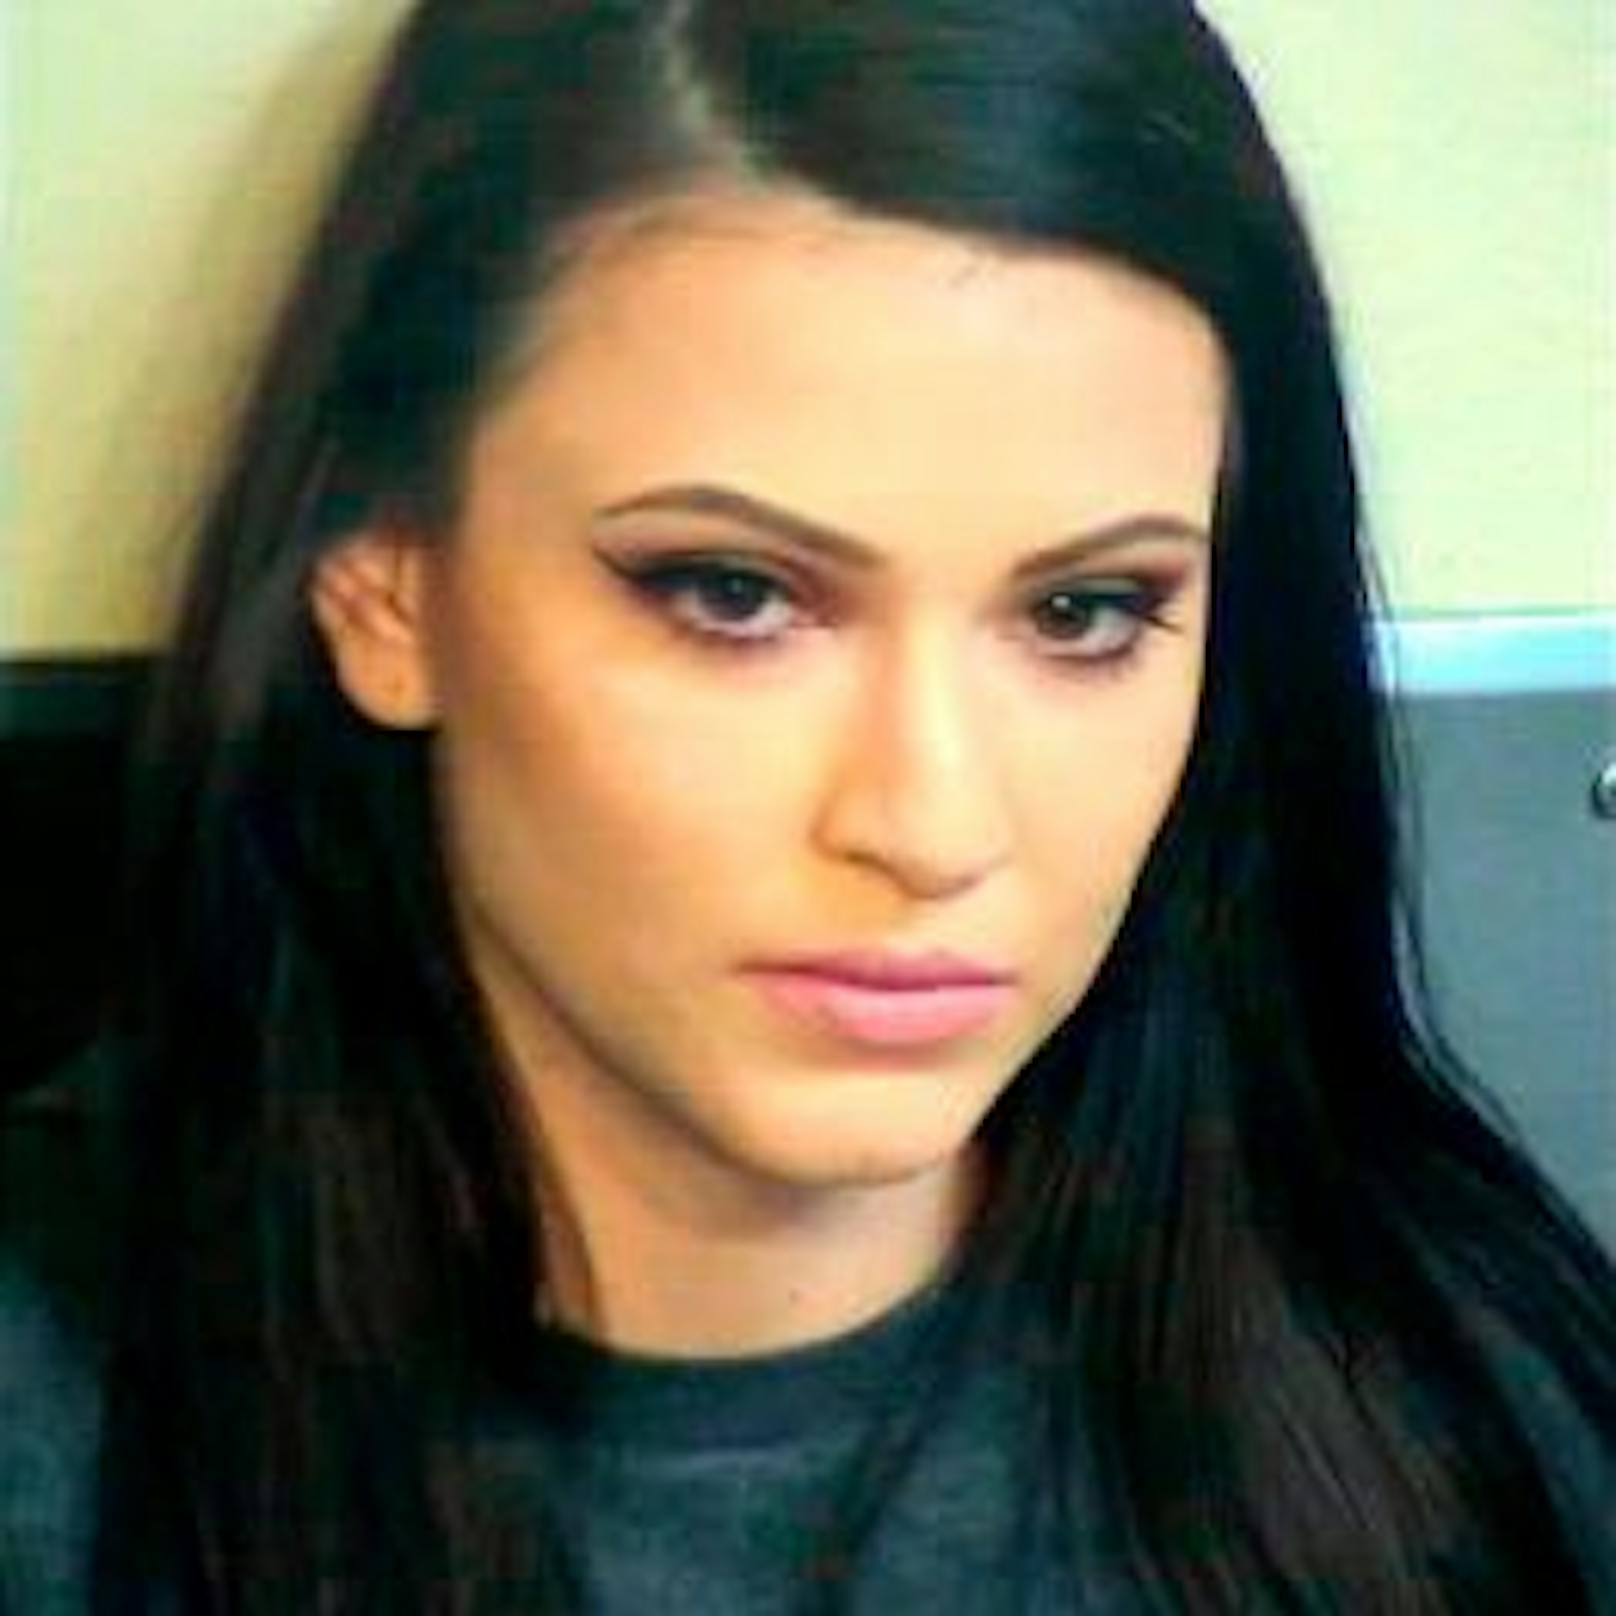 Tina Gonzalez auf einem Archivbild, das die Polizei bei ihrer Festnahme im Mai 2020 veröffentlichte.